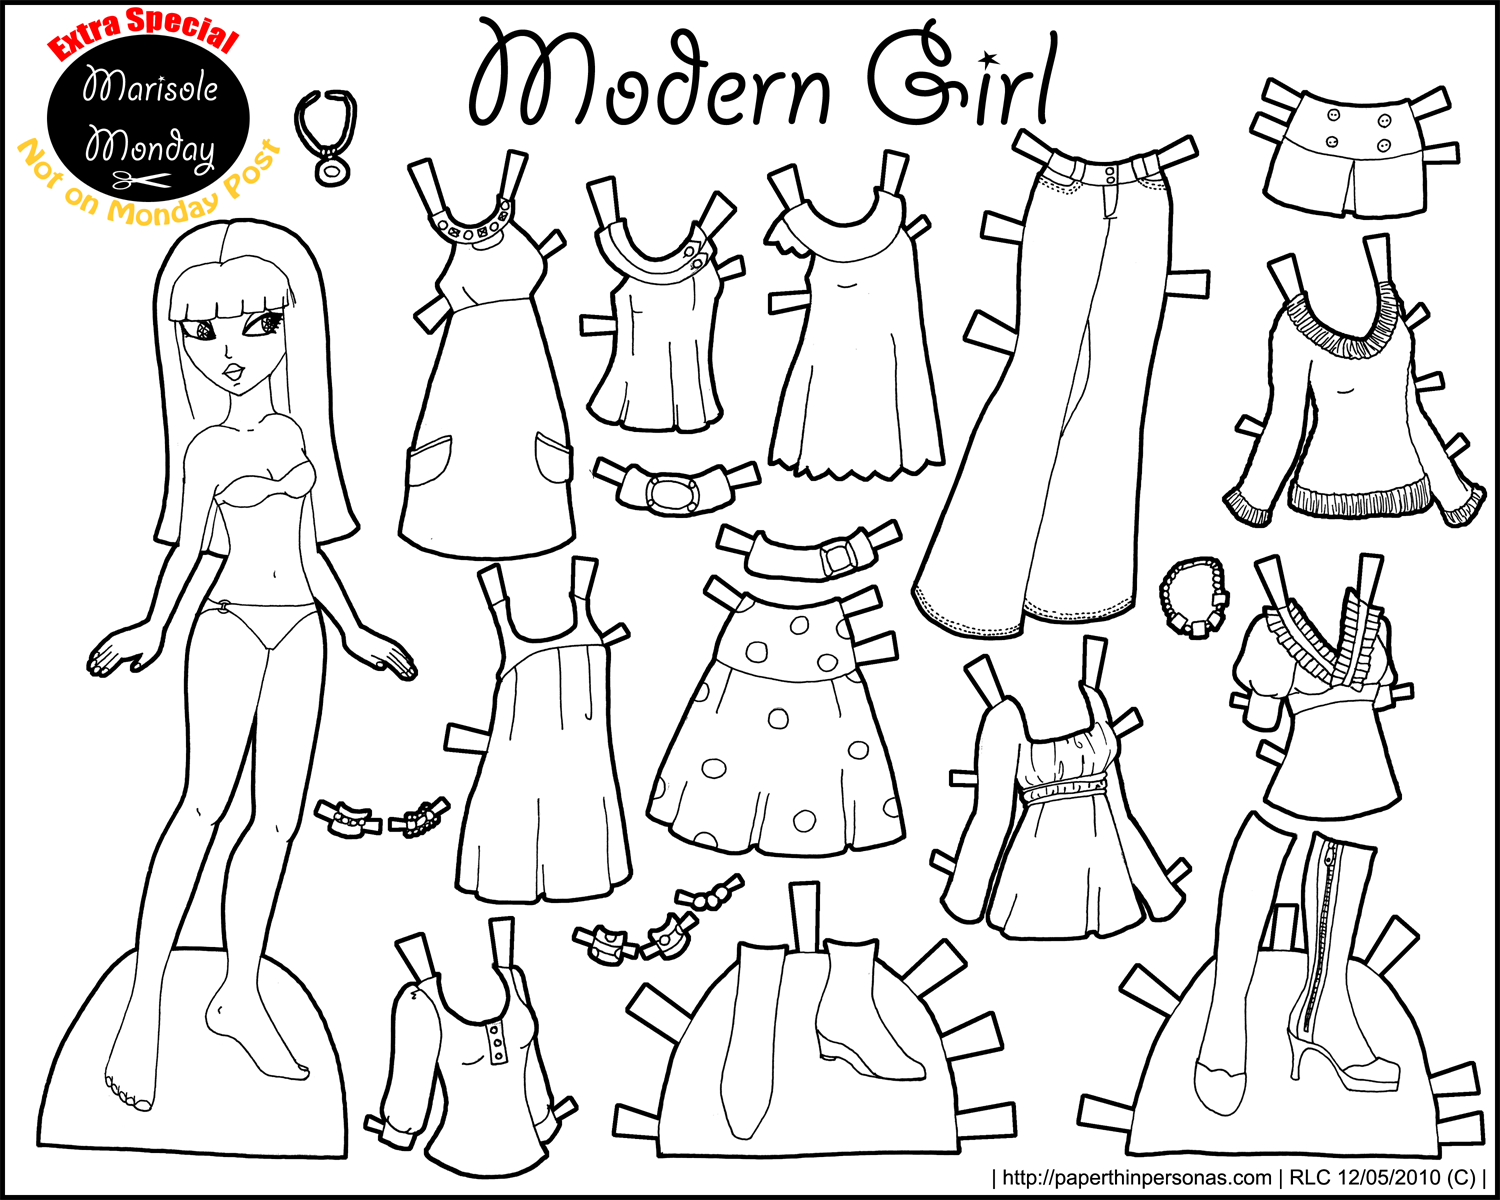 girl paper doll clip art